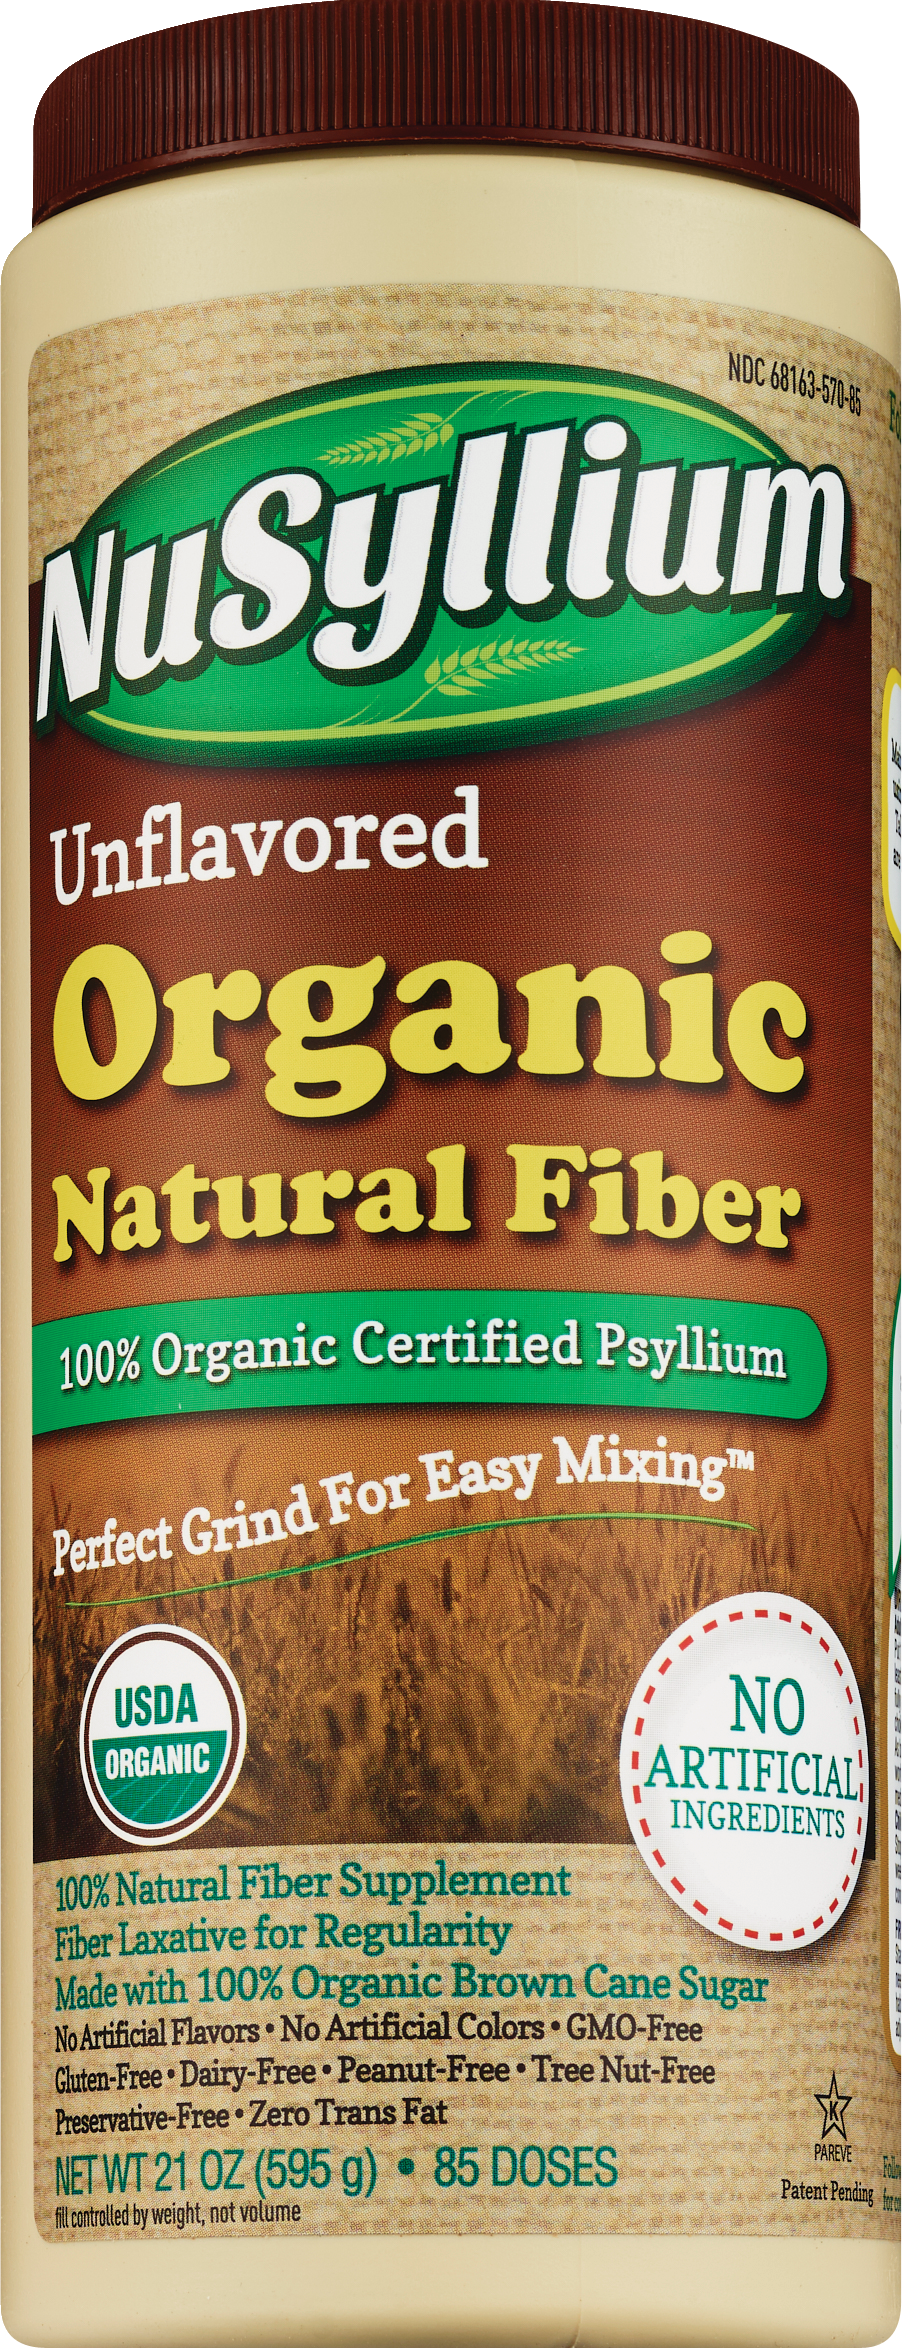 NuSyllium Unflavored Organic Natural Fiber